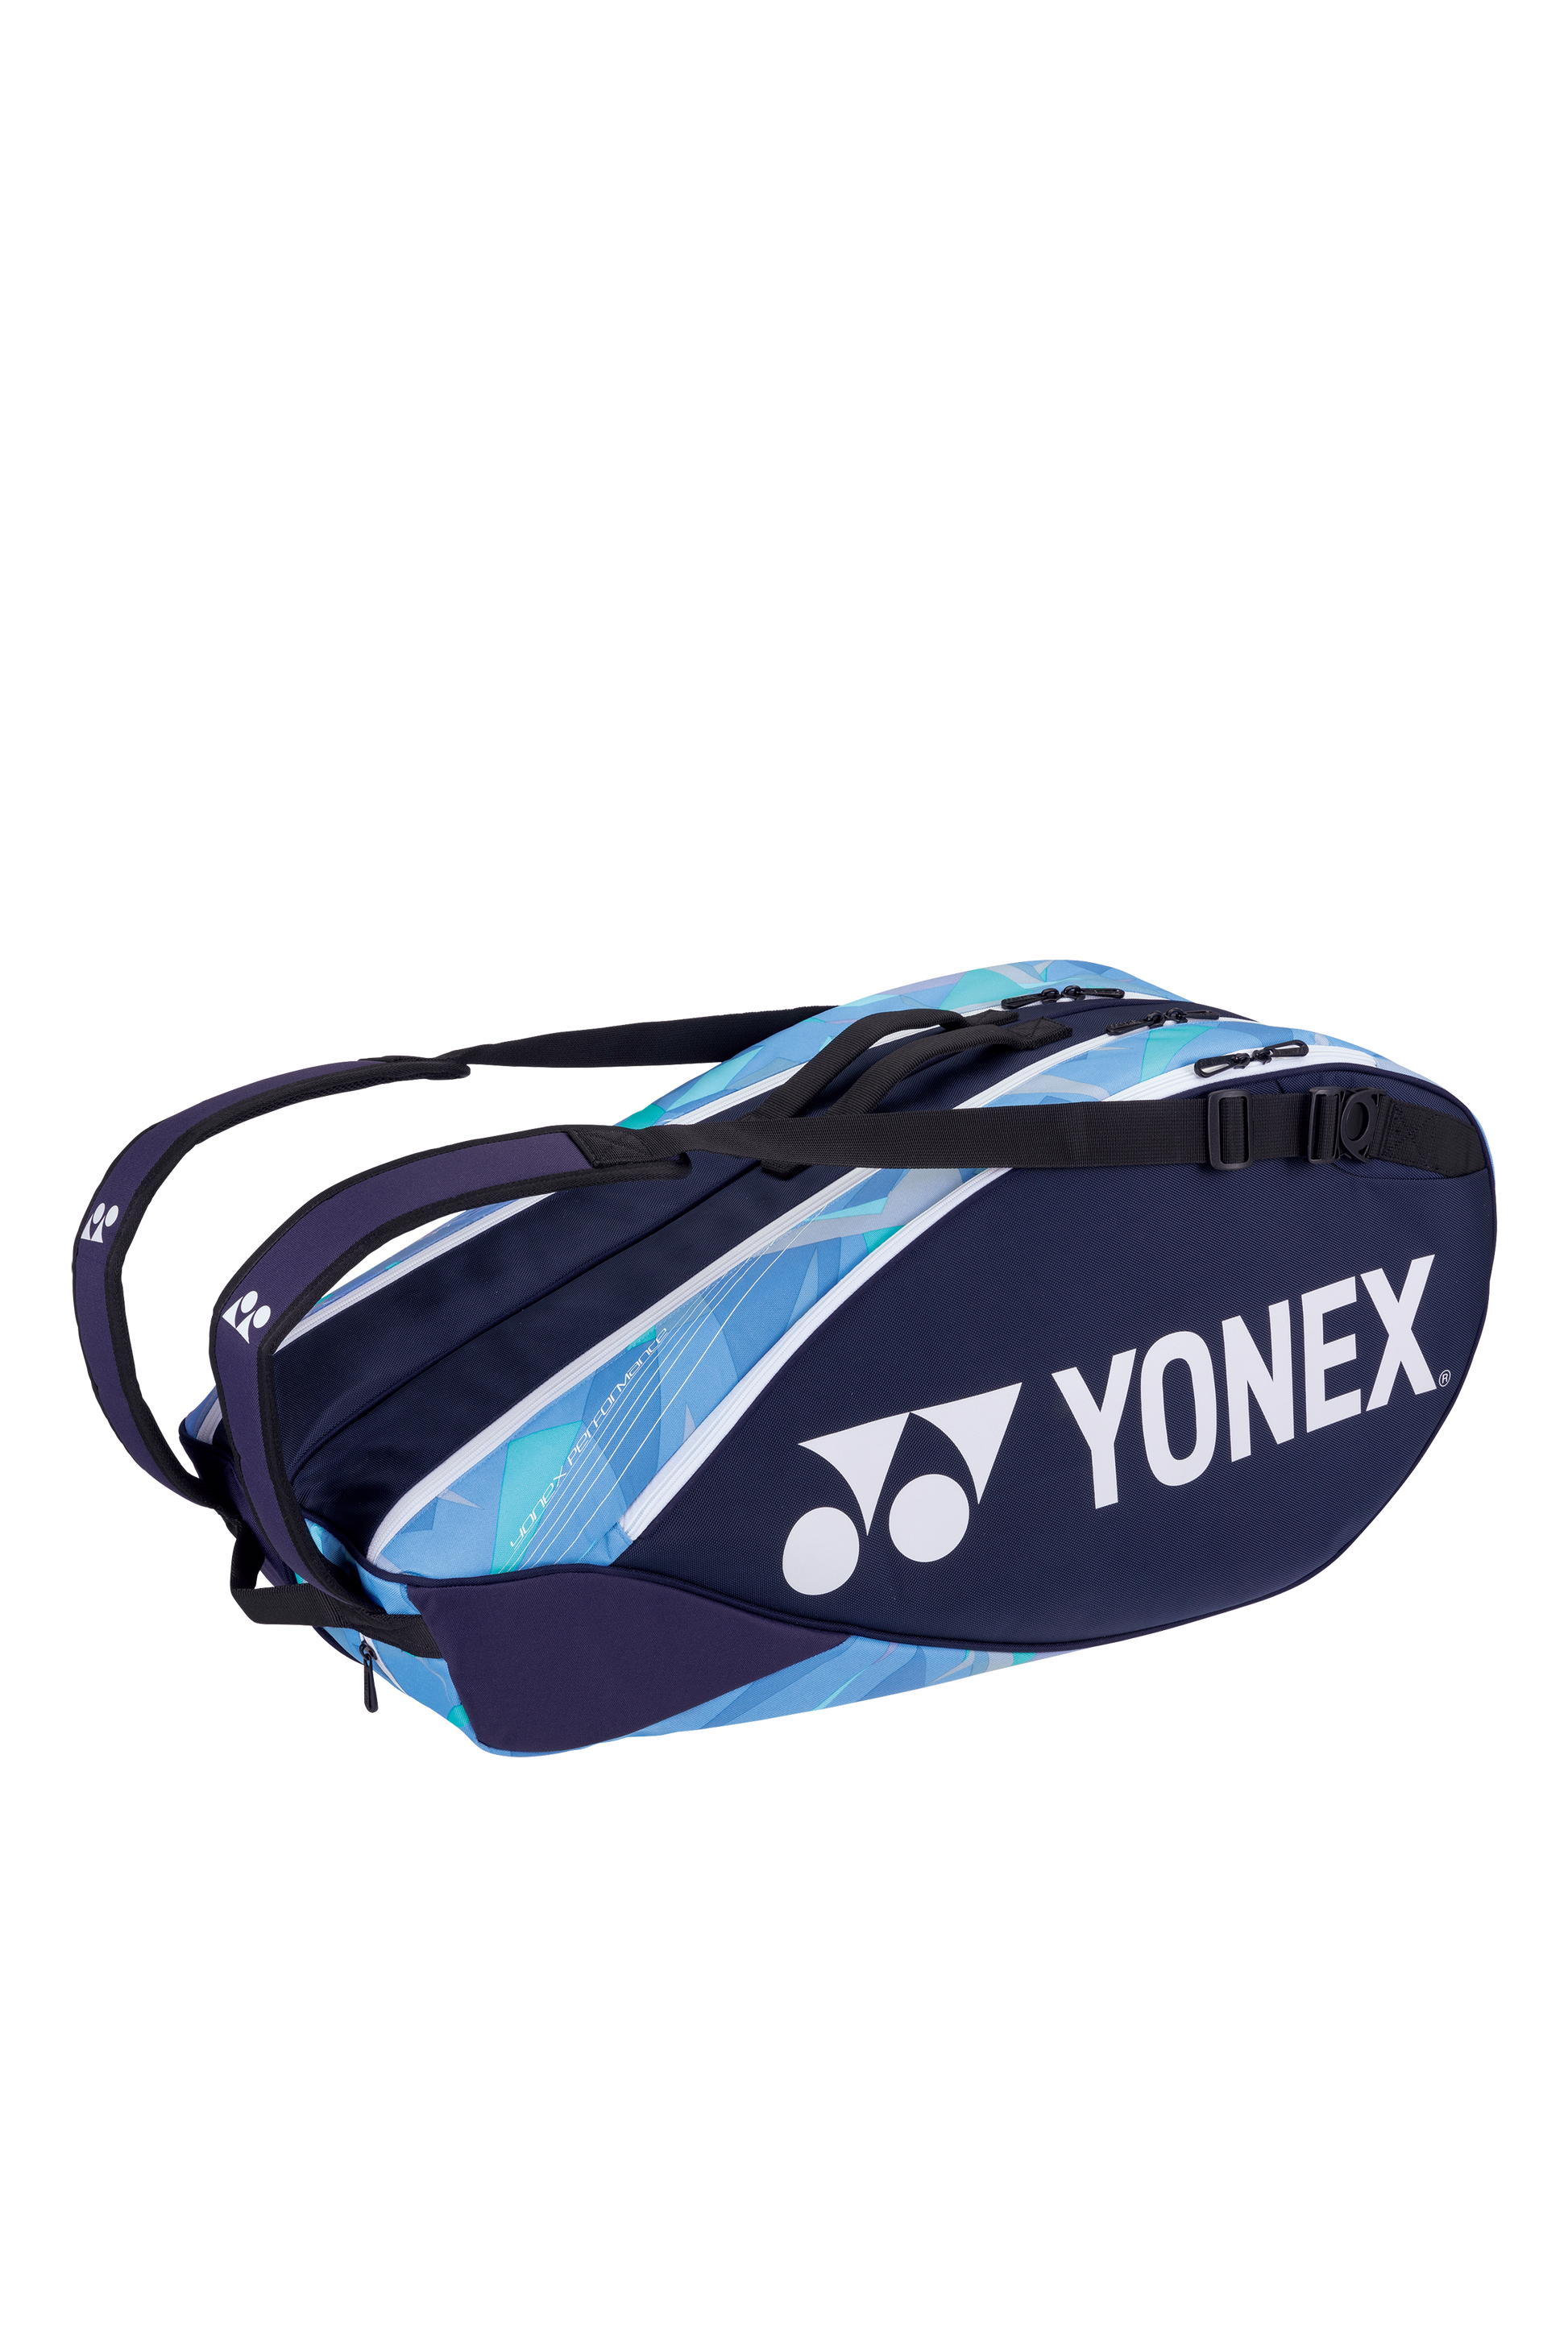 YONEX Pro Bag 92226 (6PCS) [Sax/Navy] - Max Sports